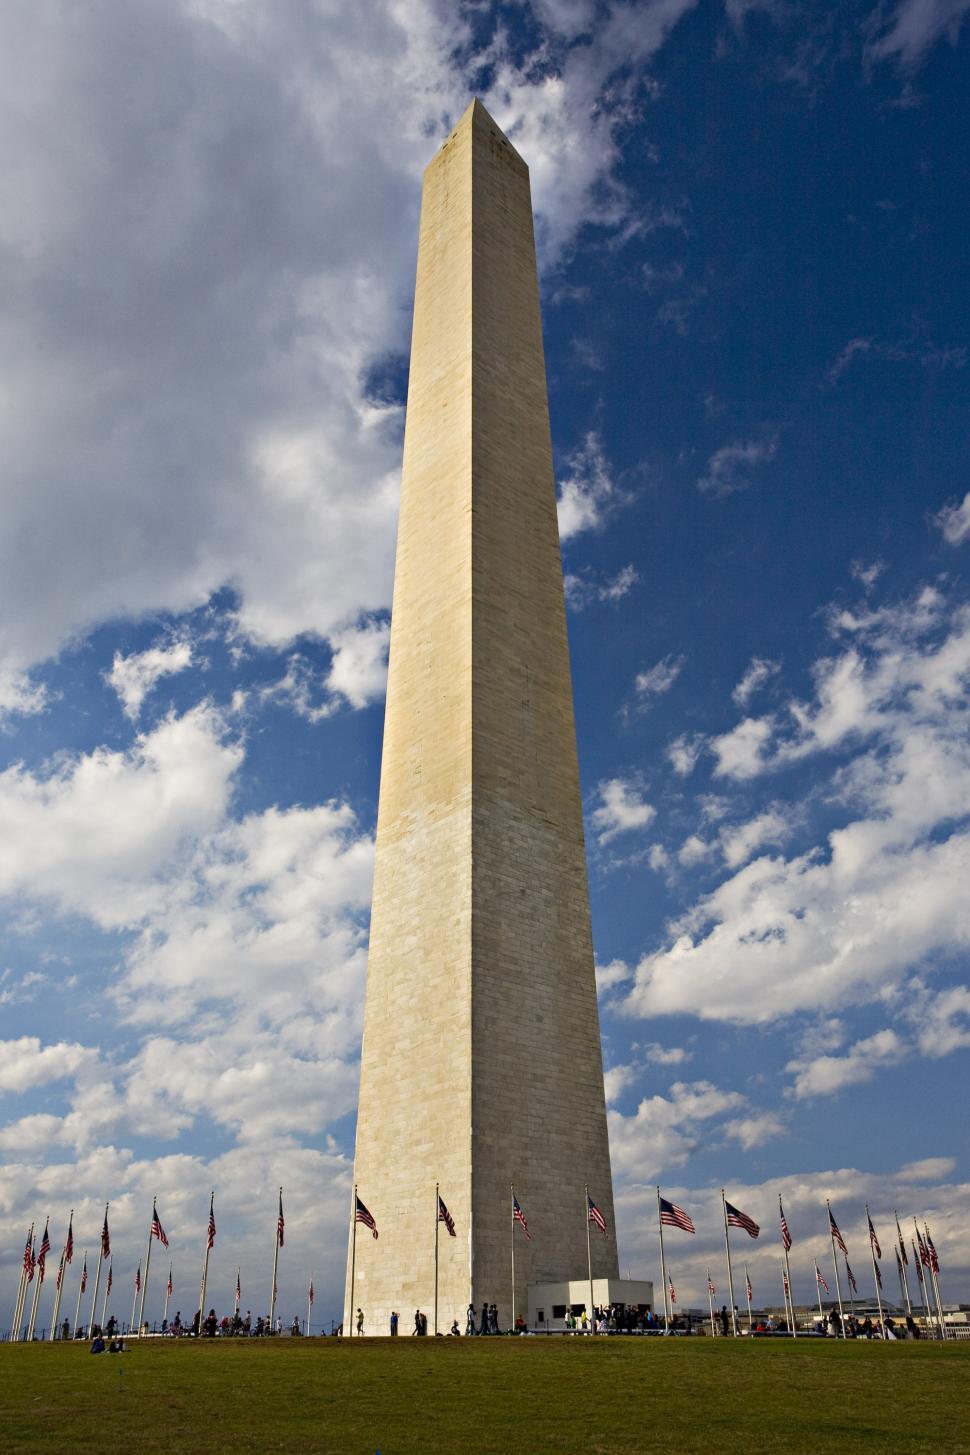 Free Image of Washington Monument Obelisk 